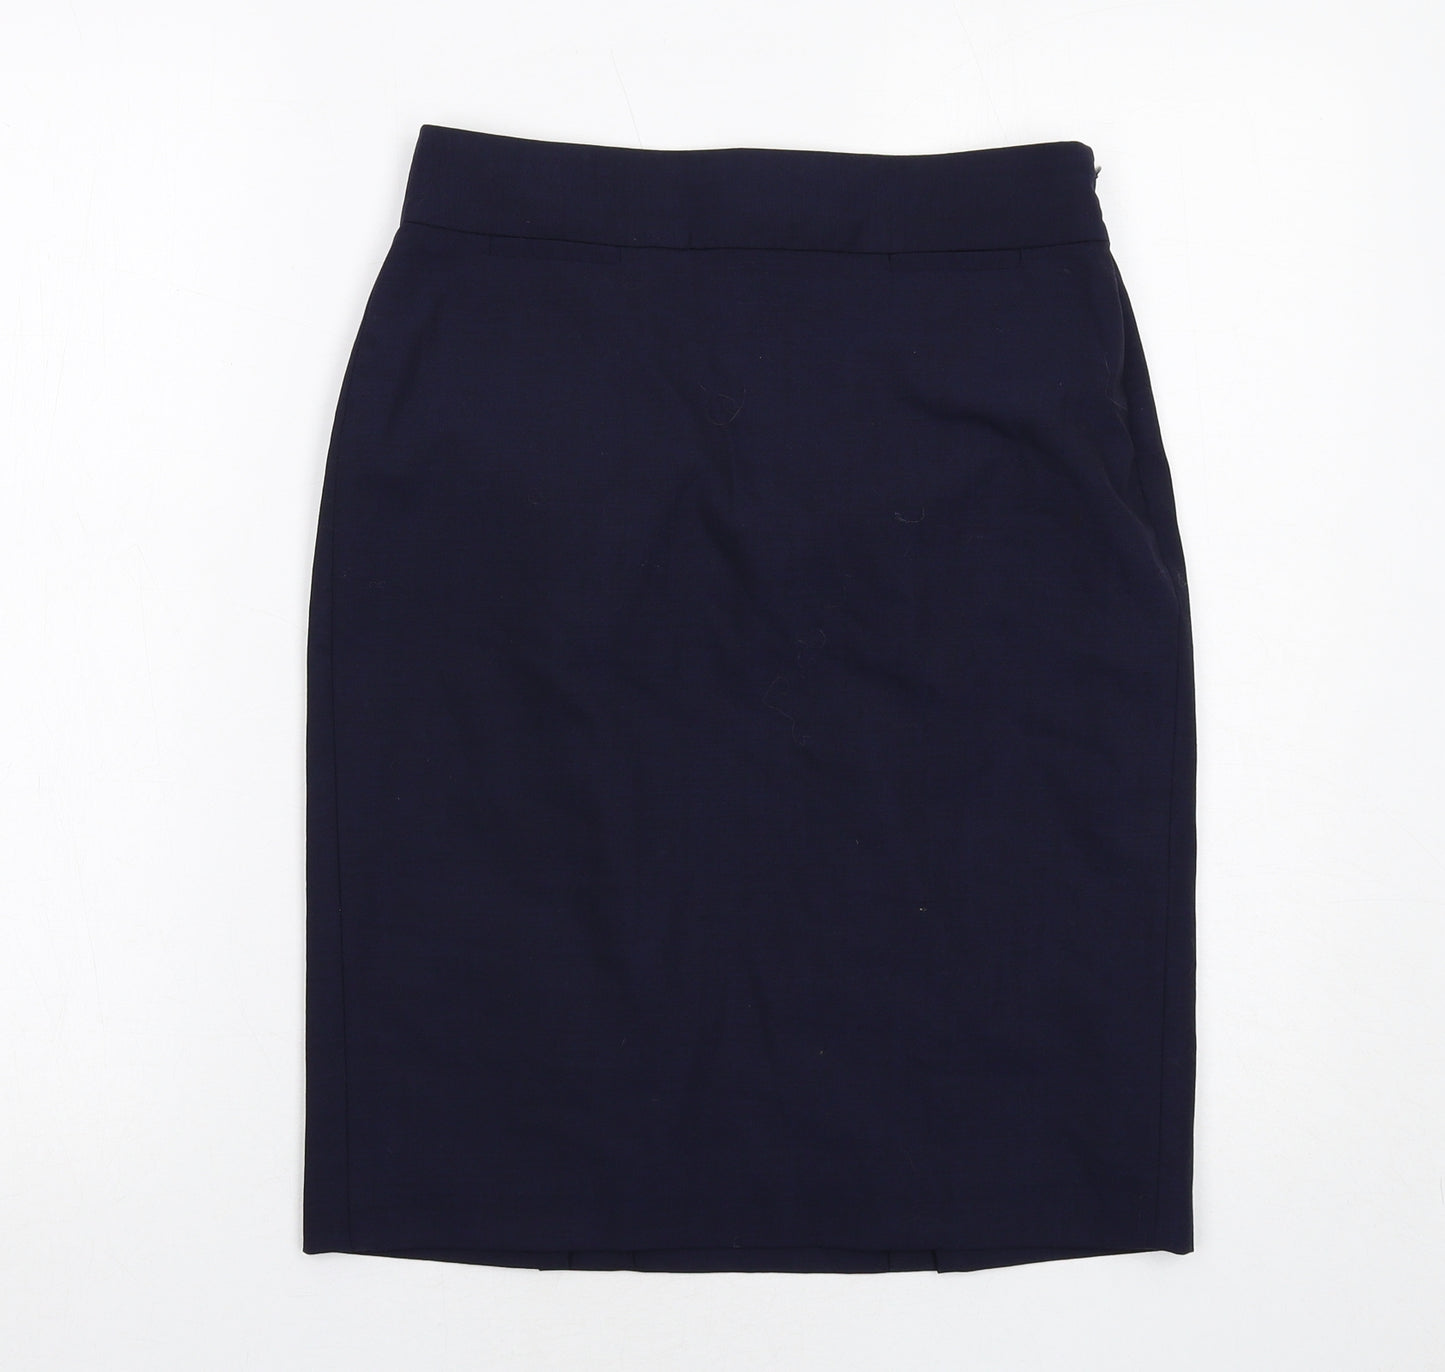 Banana Republic Womens Blue Wool A-Line Skirt Size 6 Zip